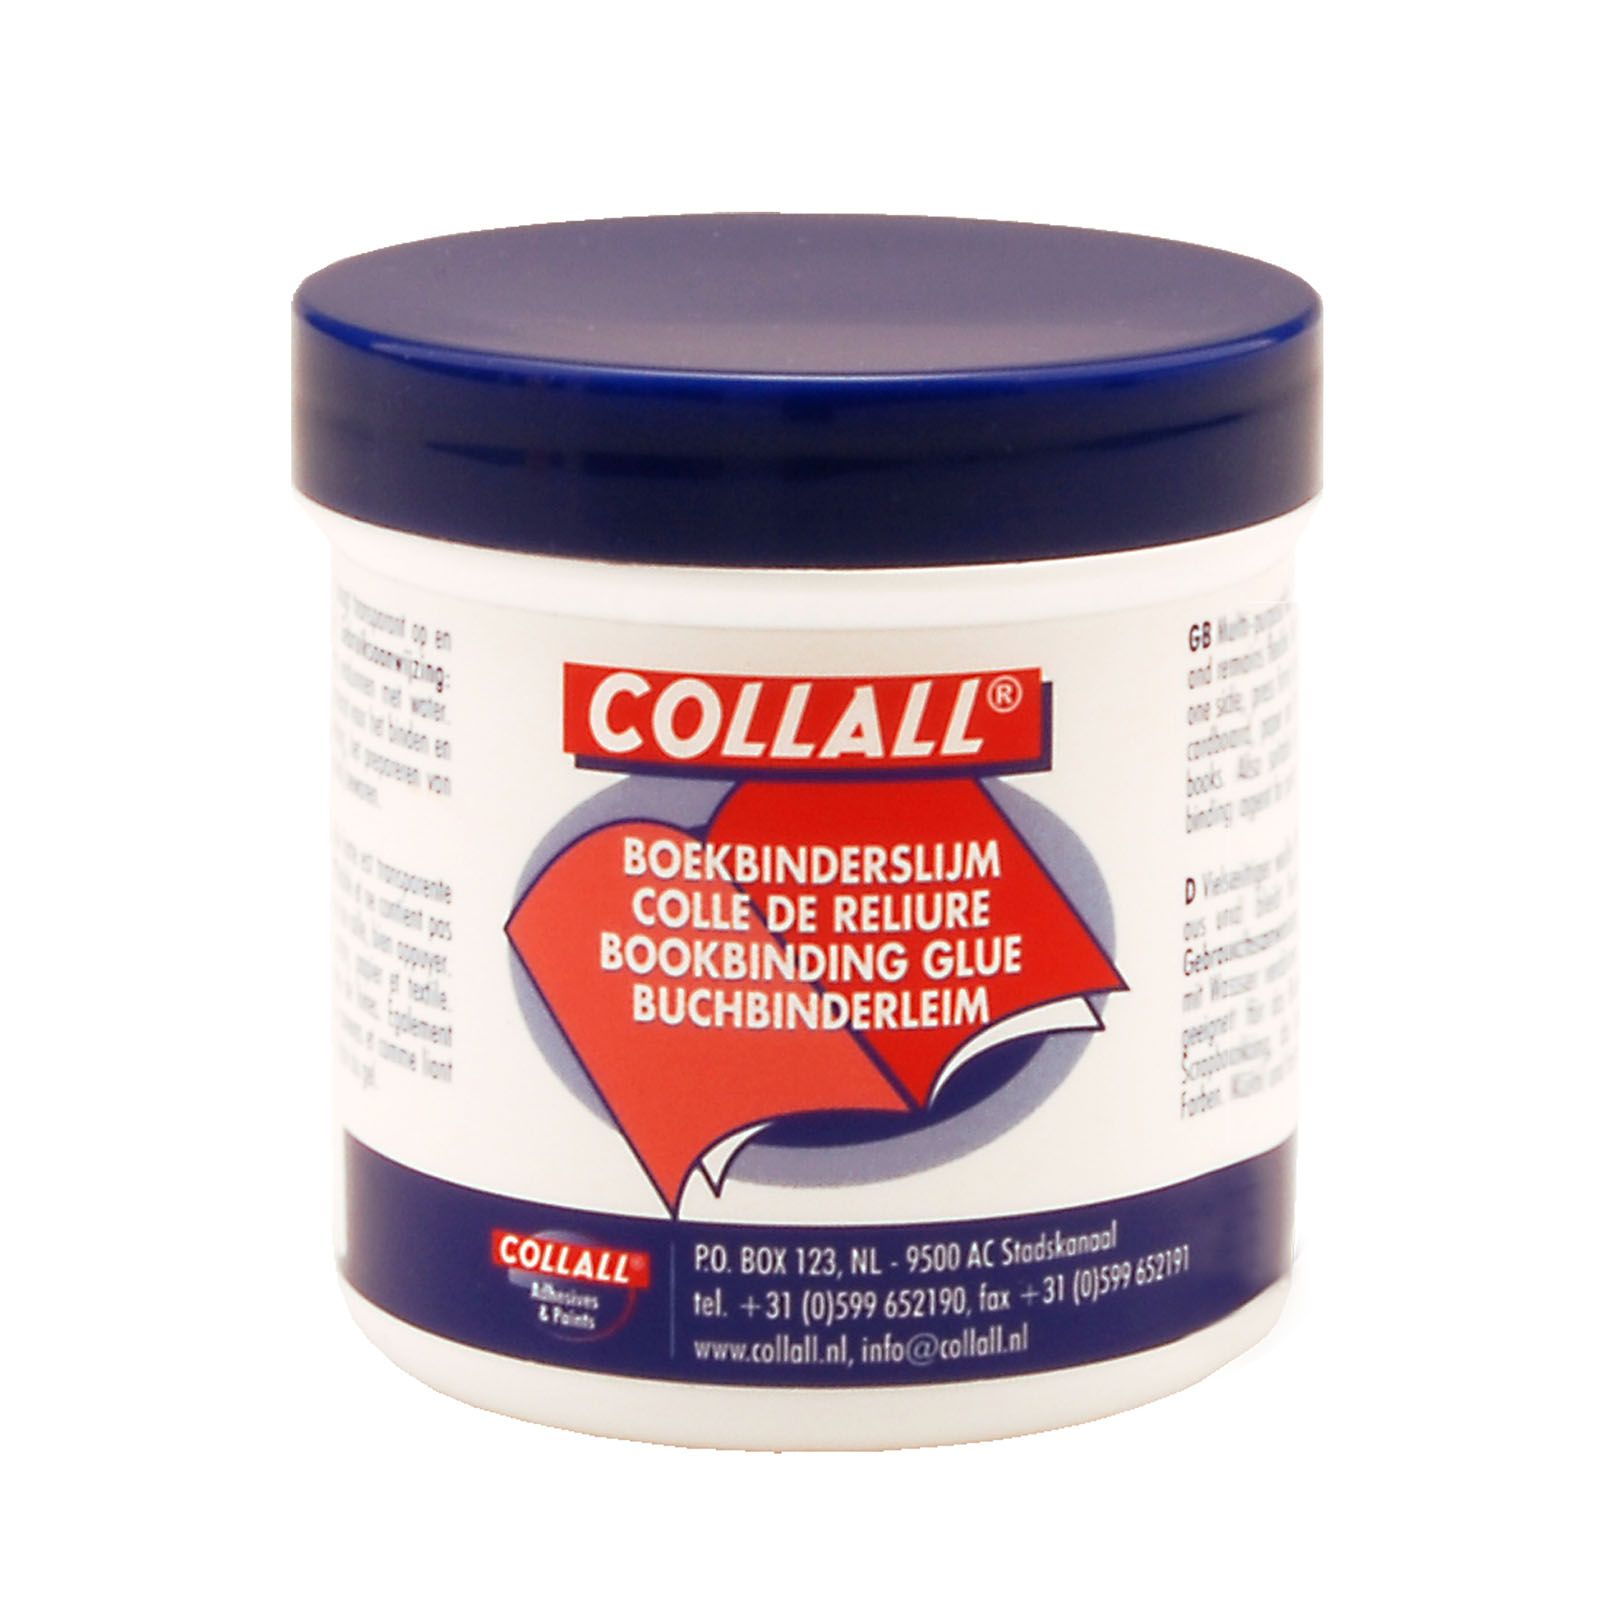 Collall • Colle de reliure 100 gram